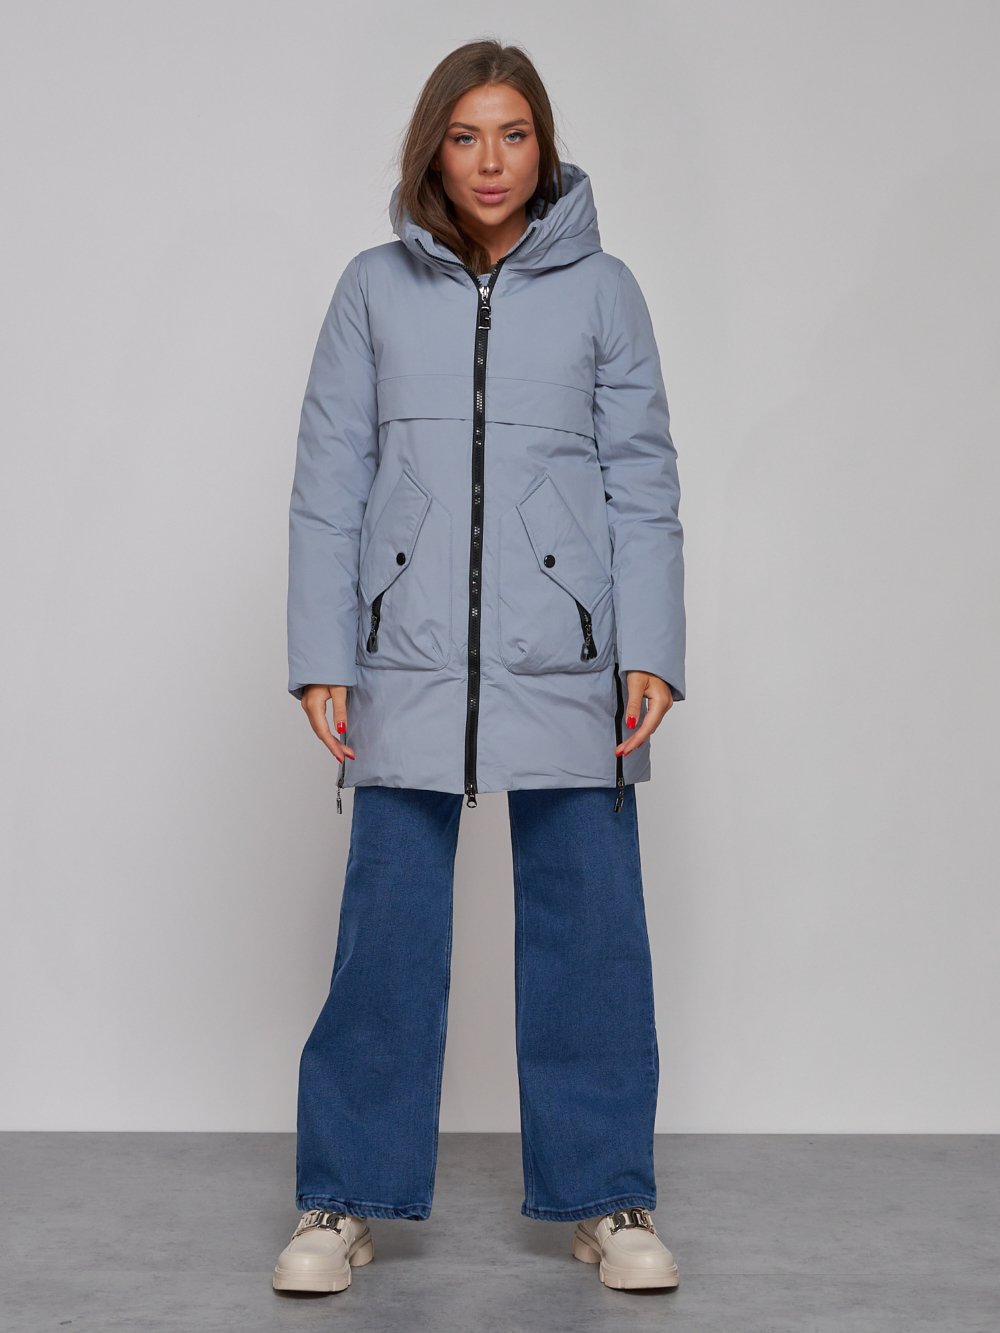 Купить оптом Зимняя женская куртка молодежная с капюшоном голубого цвета 58622Gl в Казани